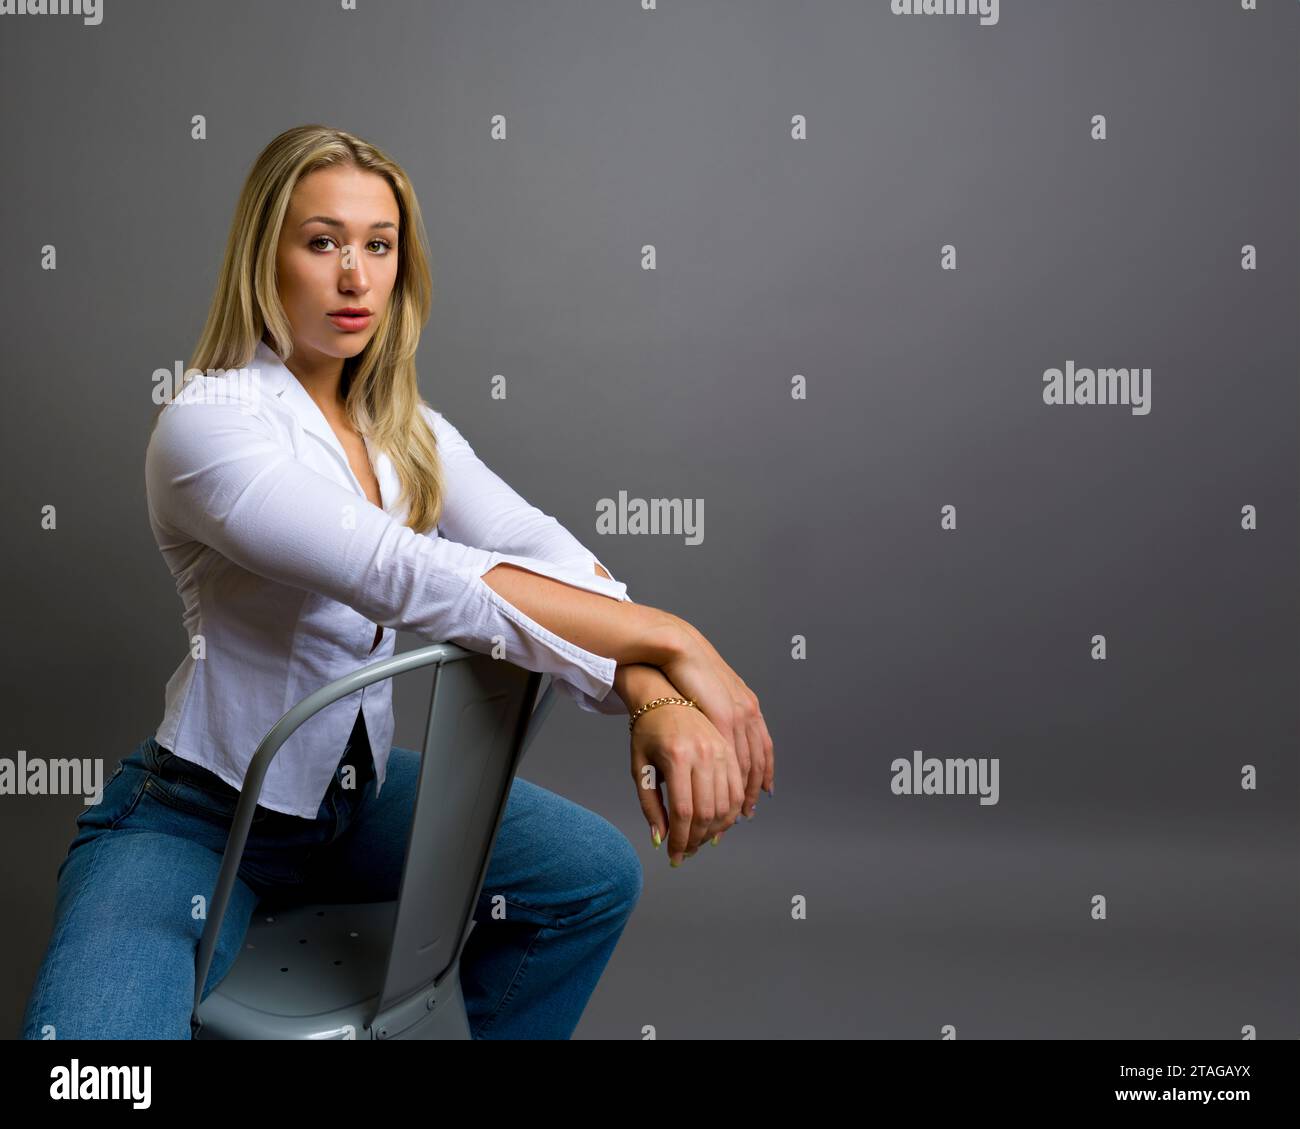 Brawny Body Builder Belle jeune femme expression réfléchie assise face à la caméra gris fond gris Copy Space Banque D'Images